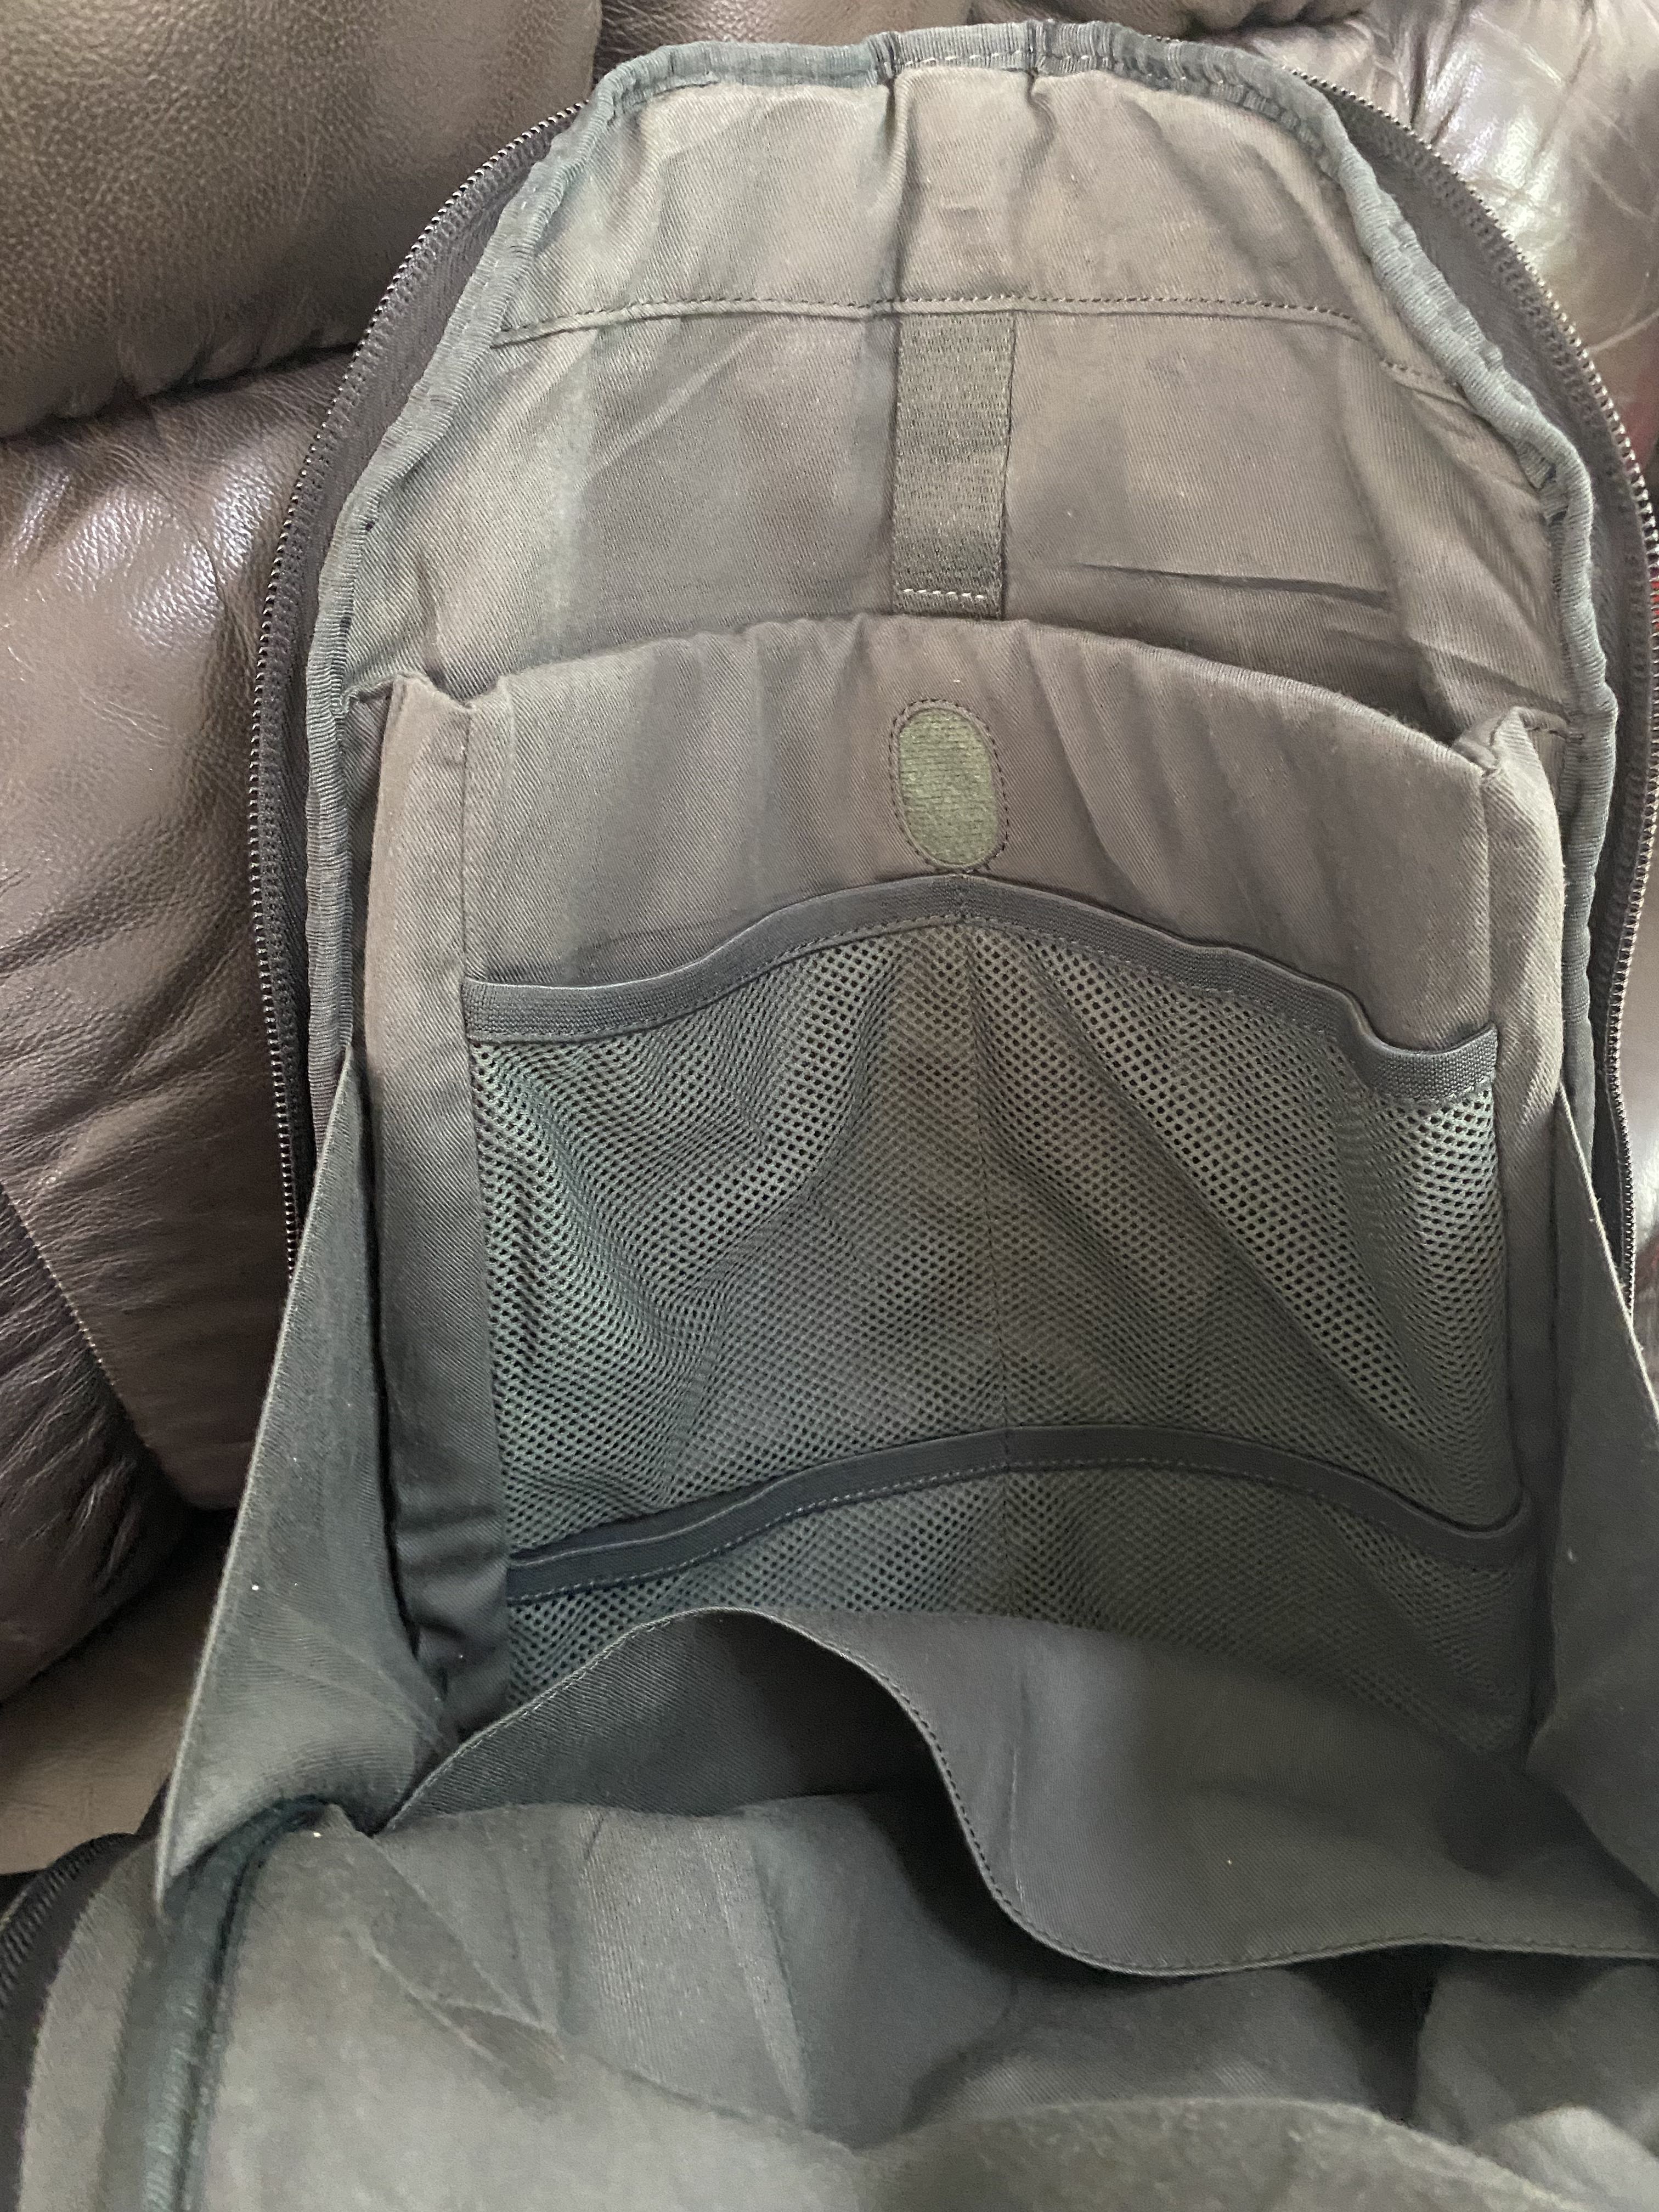 Cote & Ciel Gray Unique Travel Laptop Backpack - 7